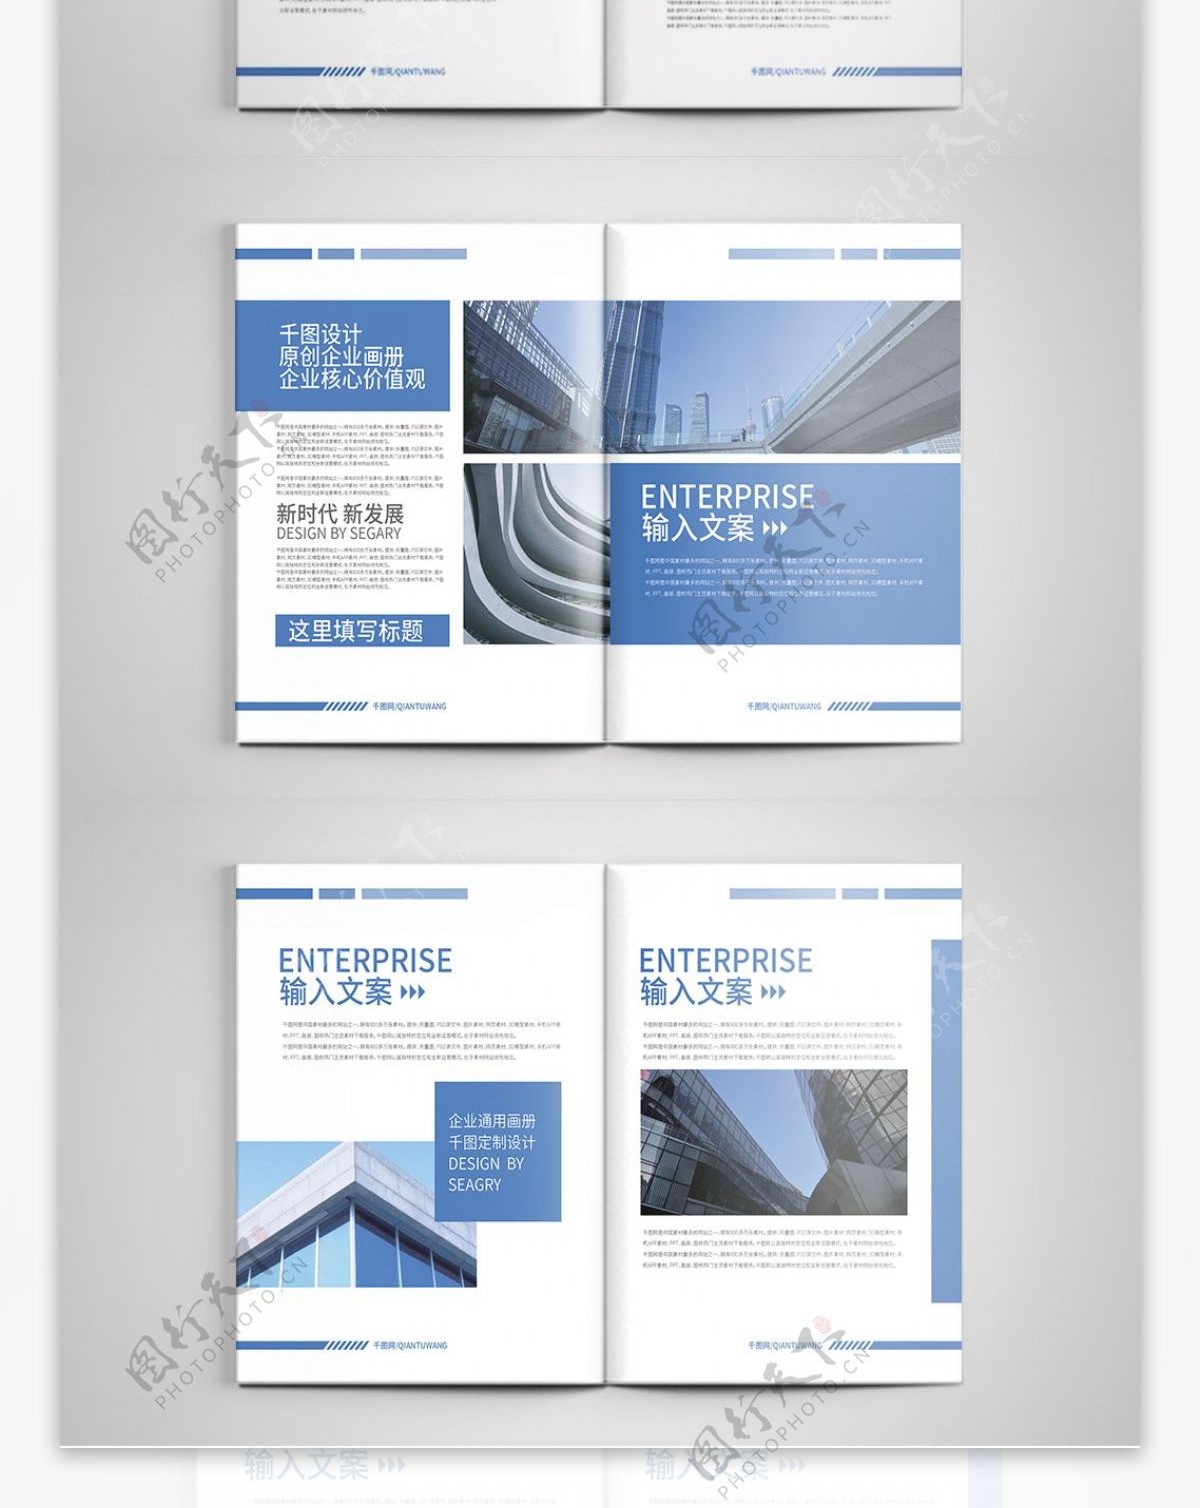 蓝色科技风商务大气企业画册